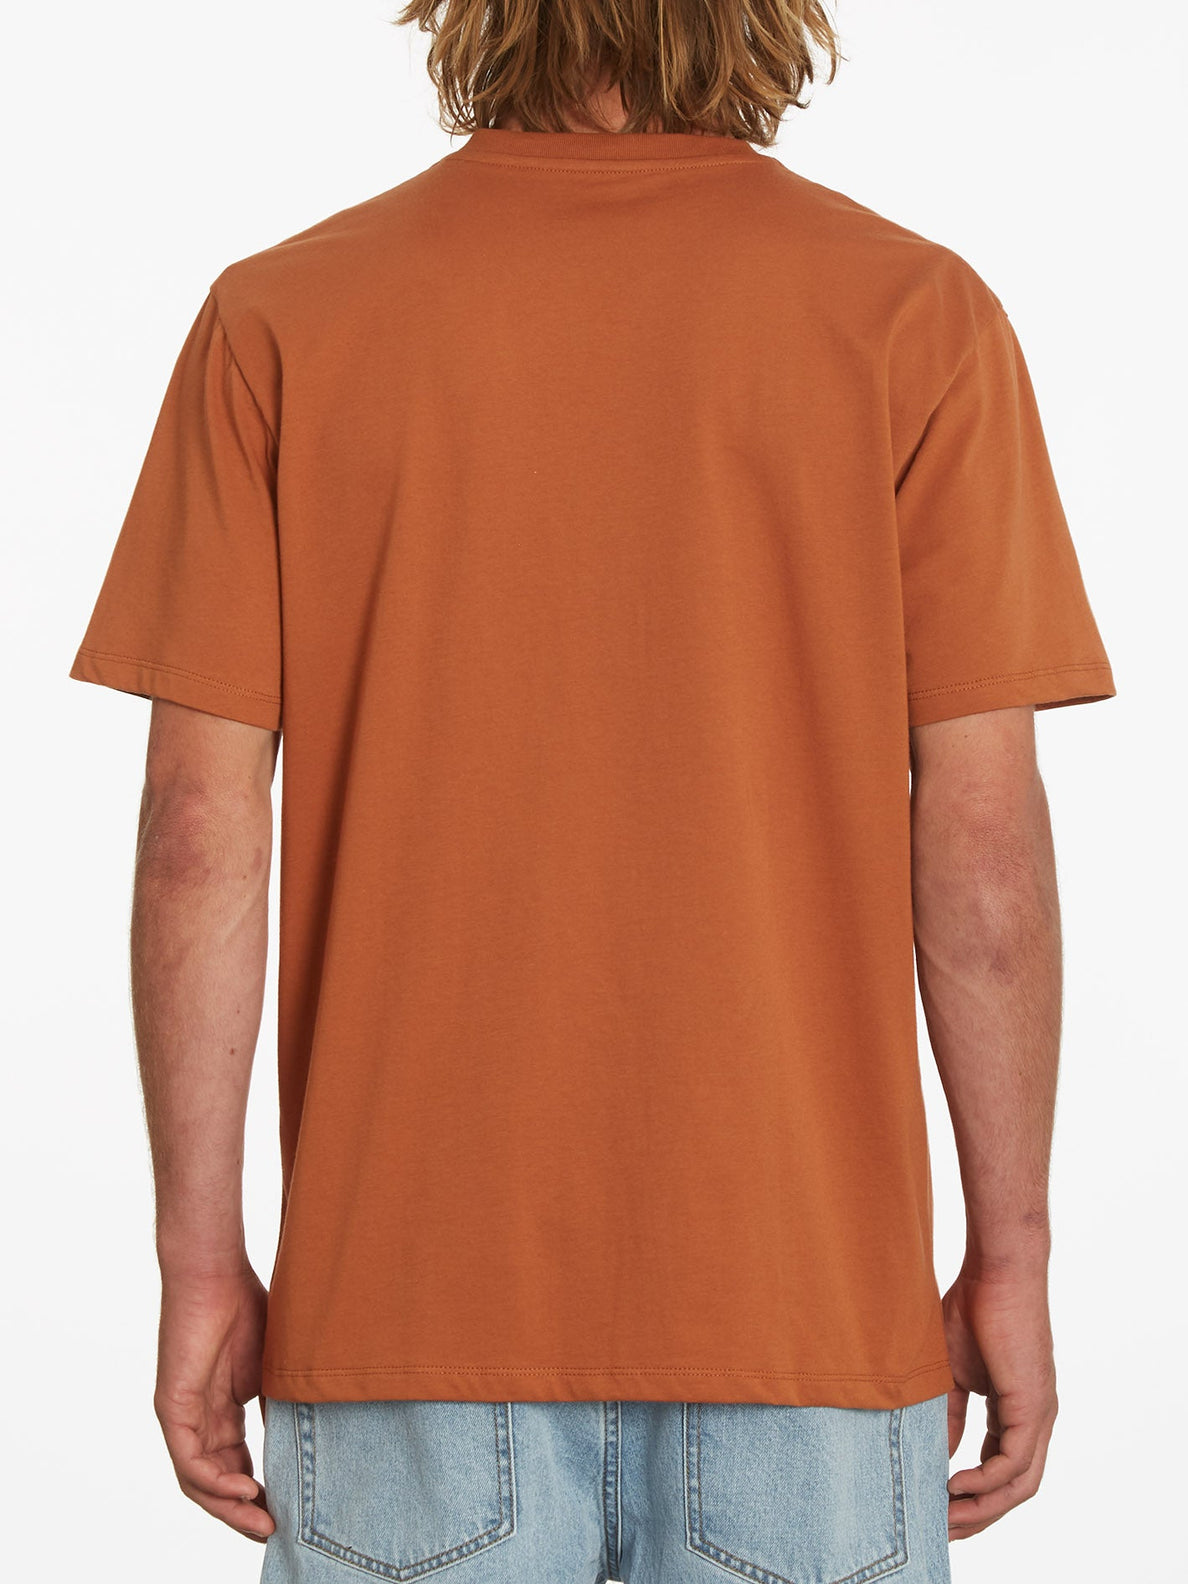 Volturb T-shirt - MOCHA (A3532210_MOC) [B]